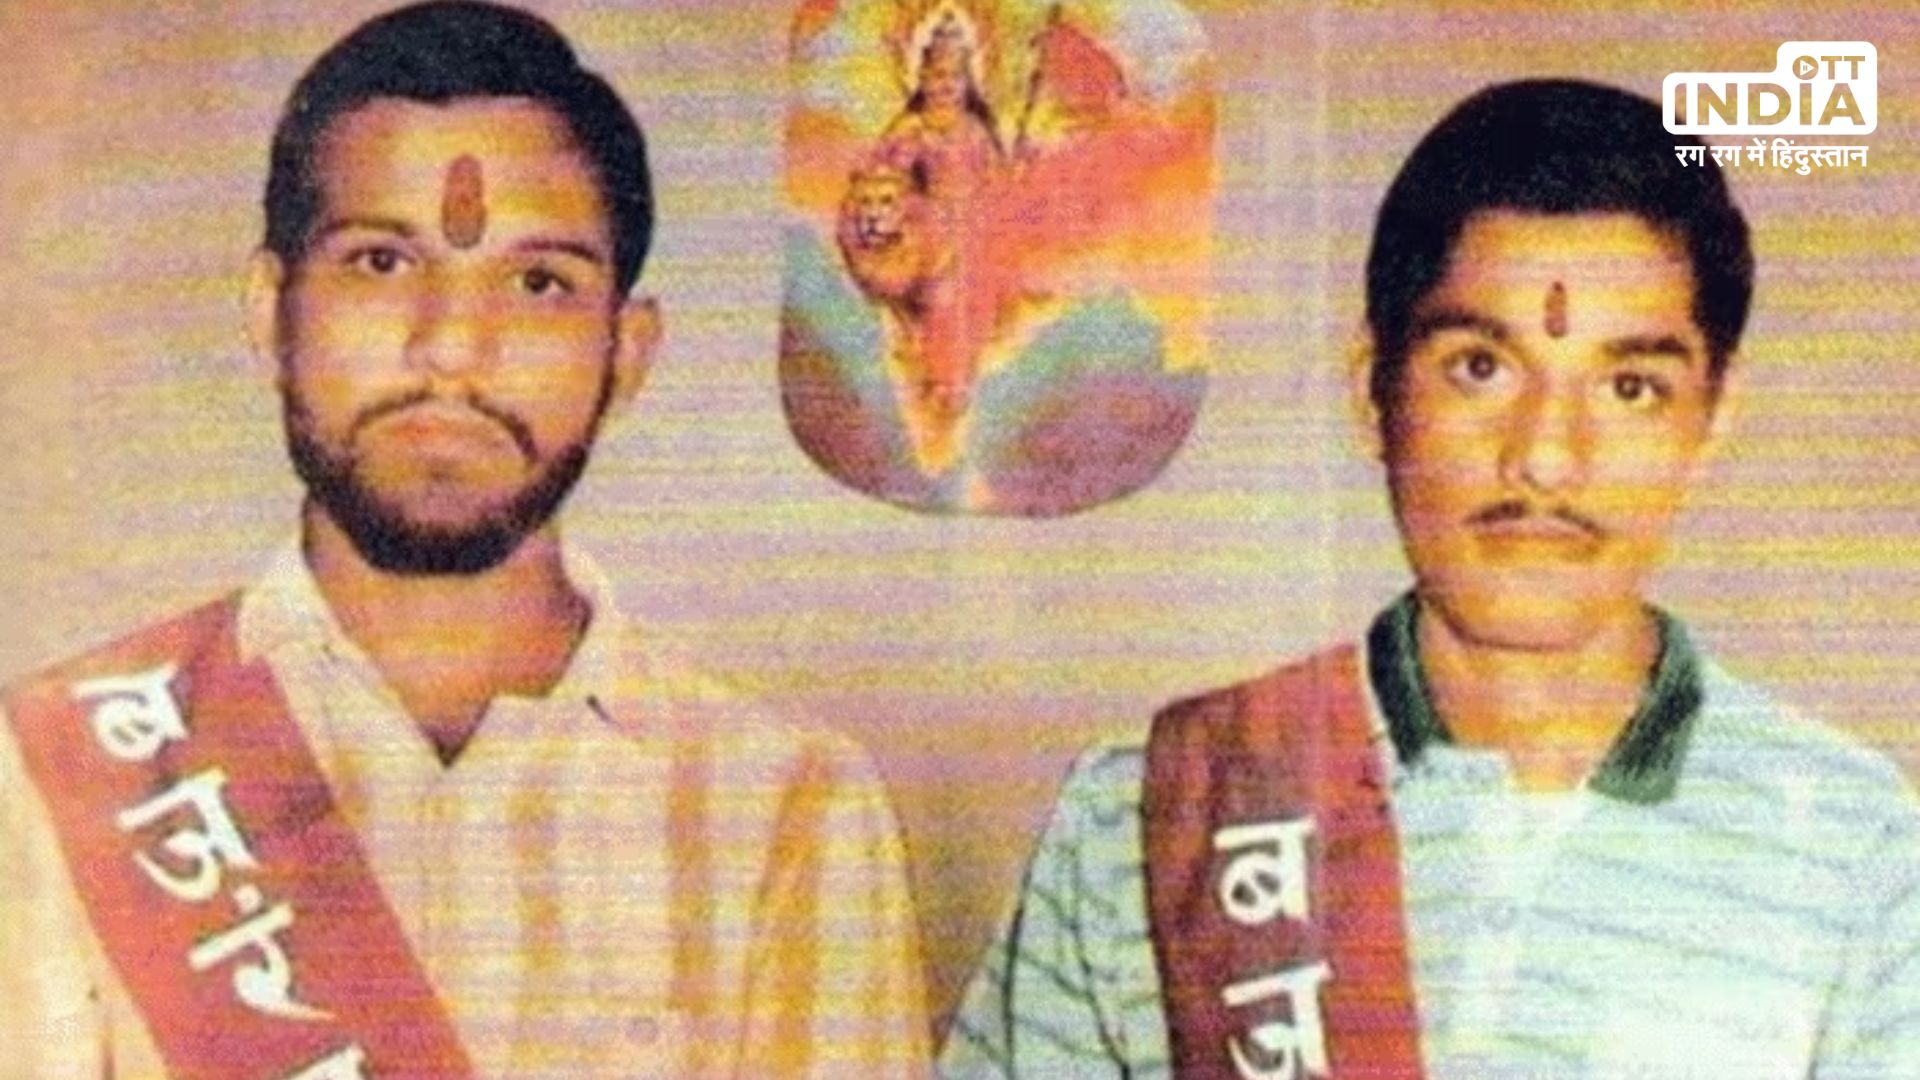 Kothari Brothers : कौन थे वो कोठारी भाई जिन्होंने राम के लिए त्यागे थे प्राण, पढ़िए कारसेवा की पूरी कहानी…